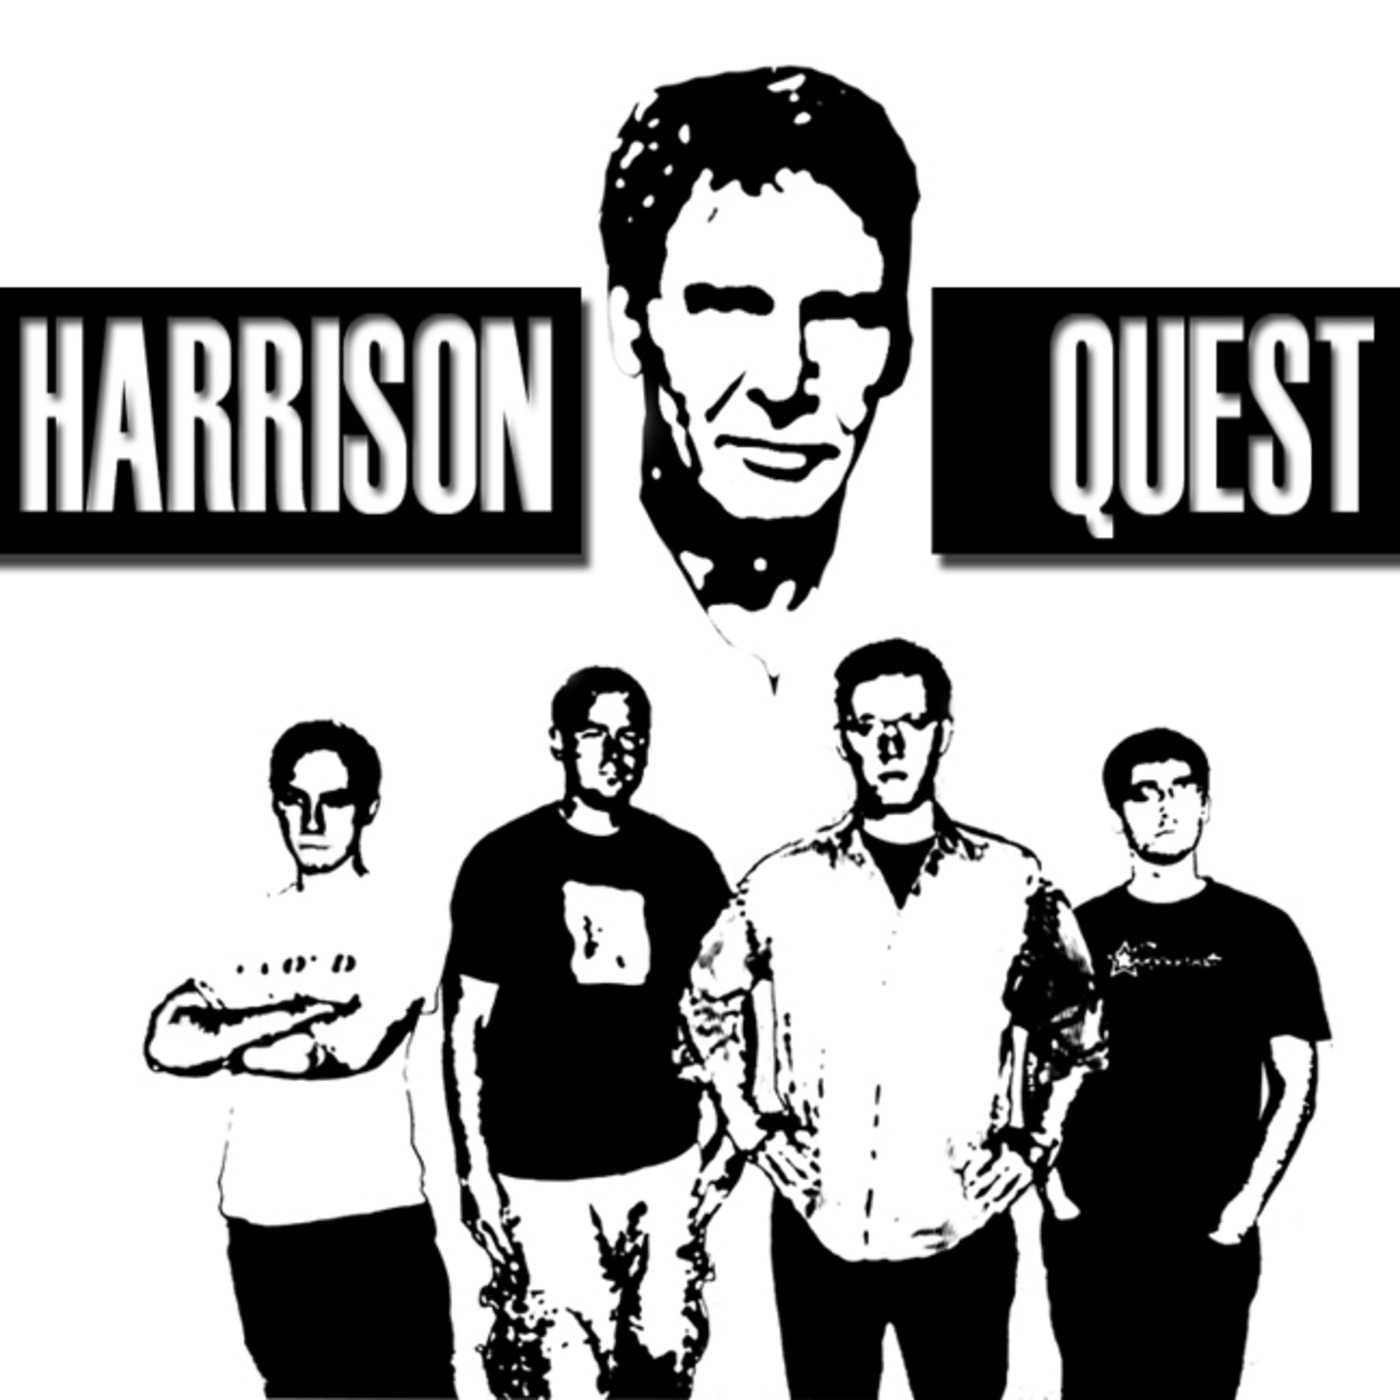 Harrison Quest